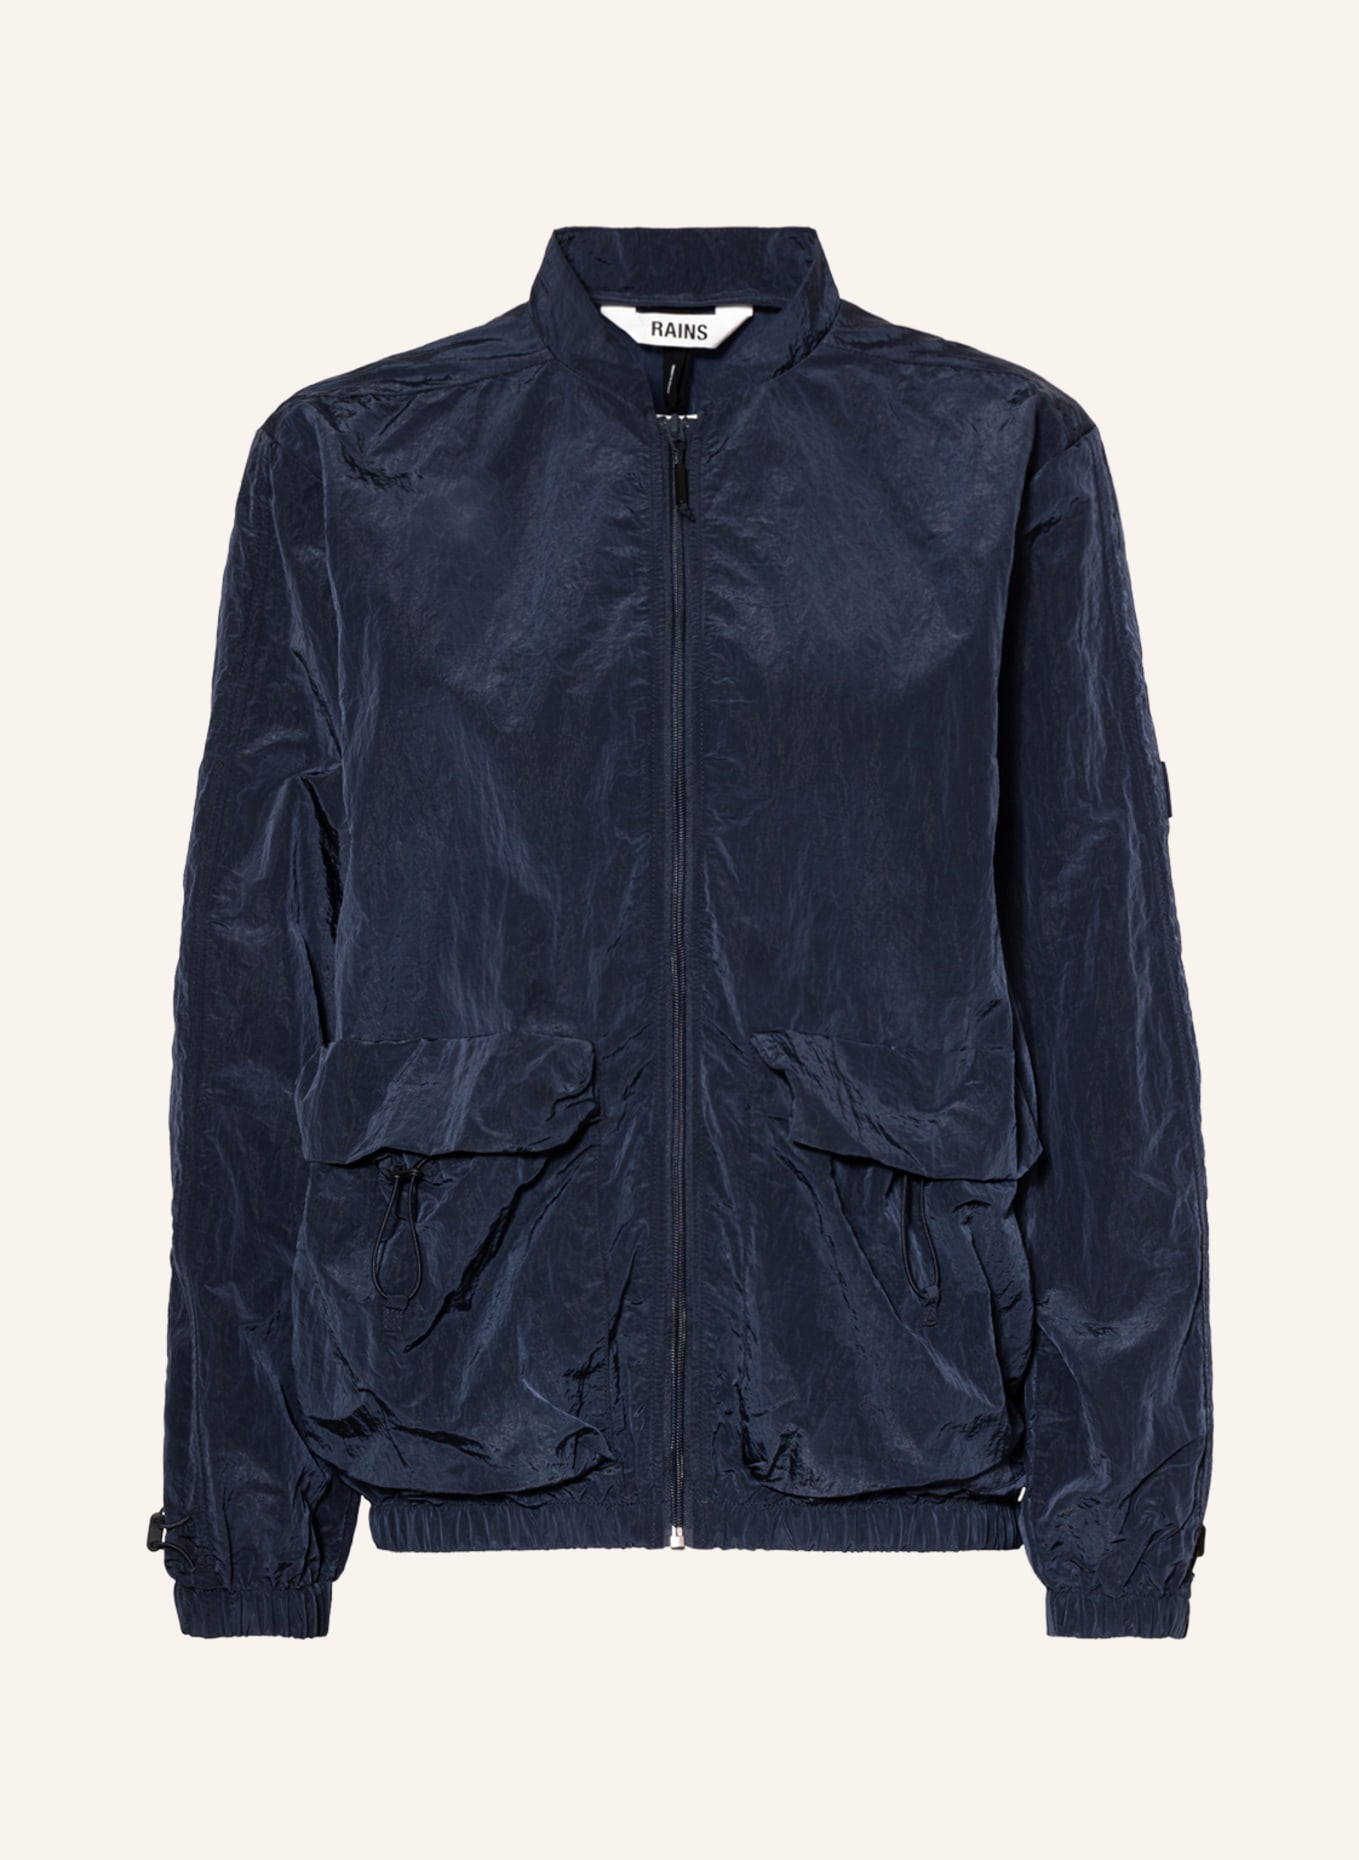 RAINS Bomber jacket, Color: DARK BLUE (Image 1)